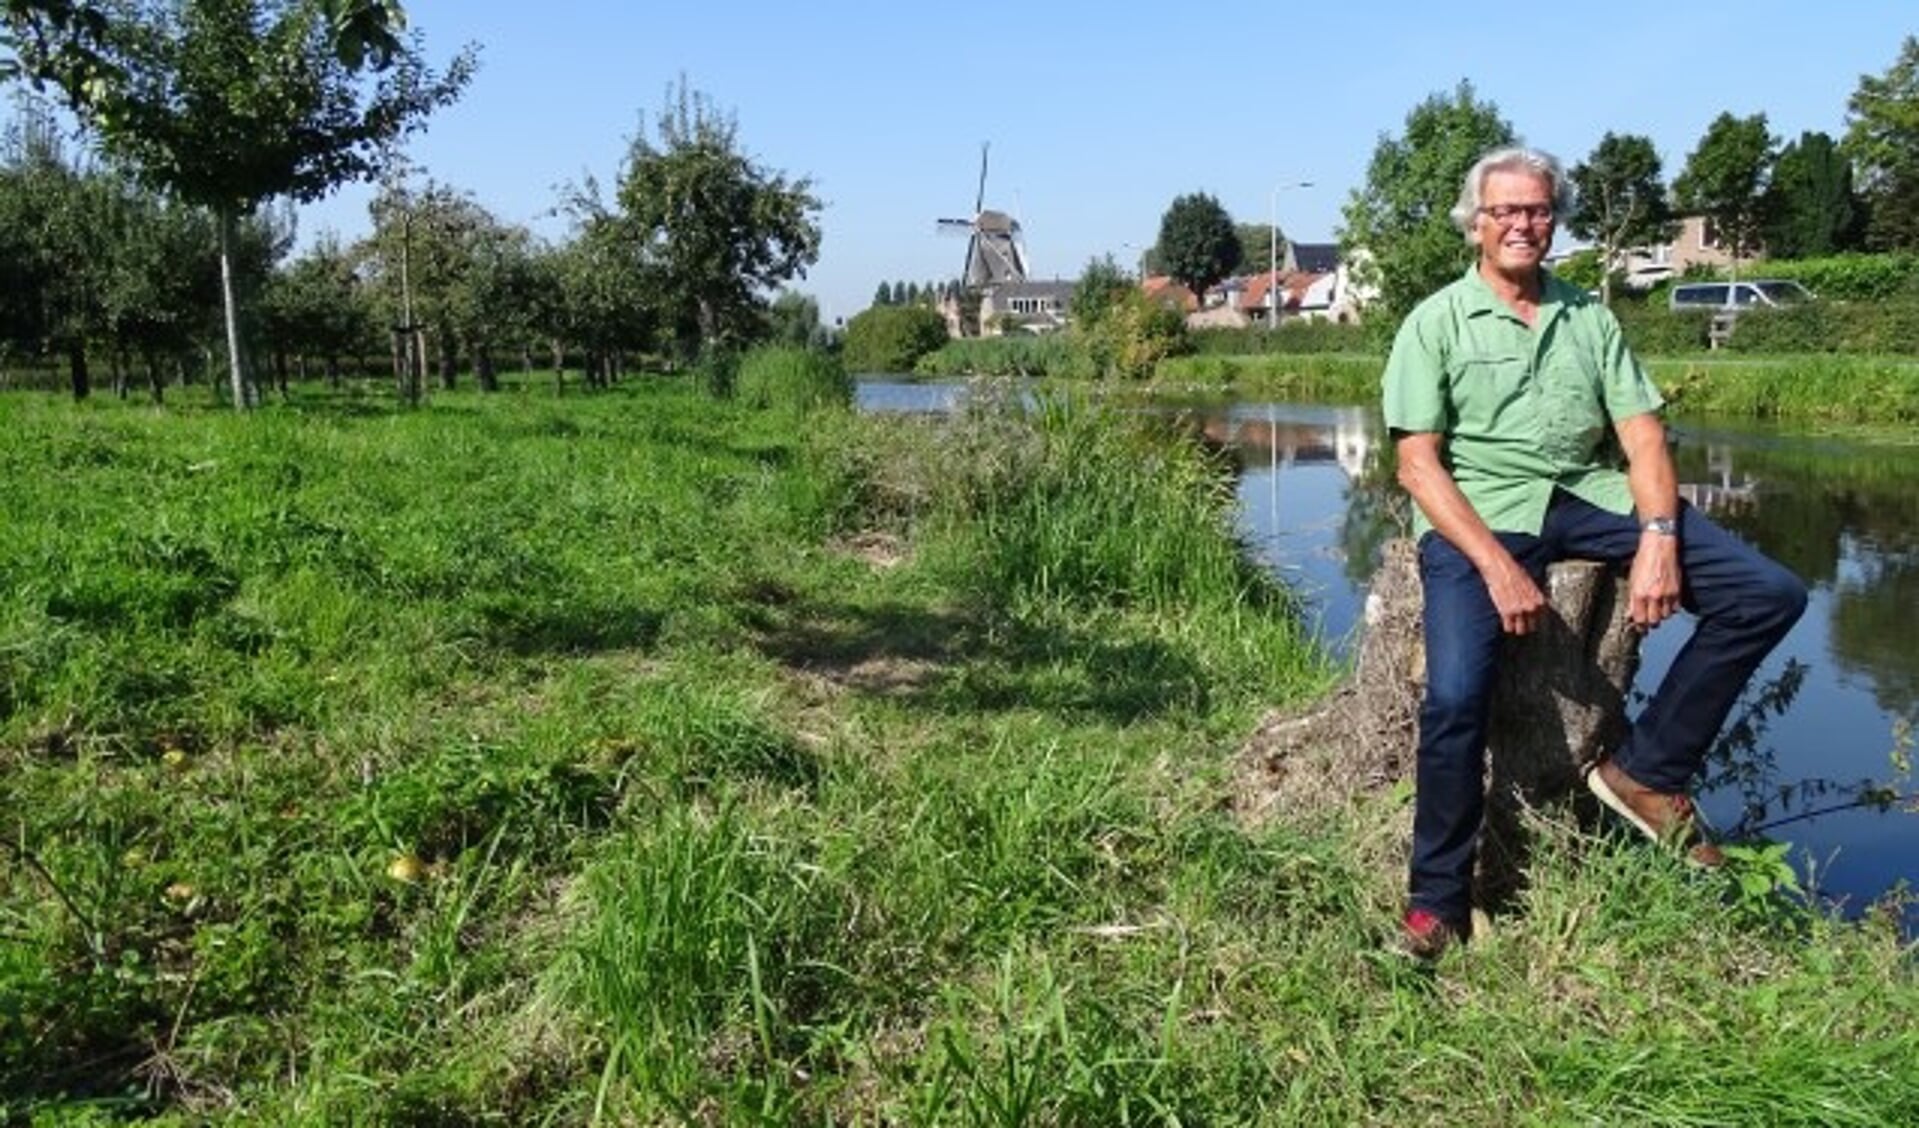 Peter Gruters in het Montfoortse Stadspark, waar hij graag zit en vanaf de waterkant uitkijkt over de molen, de kerk en het Huis van Montfoort. (Foto: Margreet Nagtegaal)